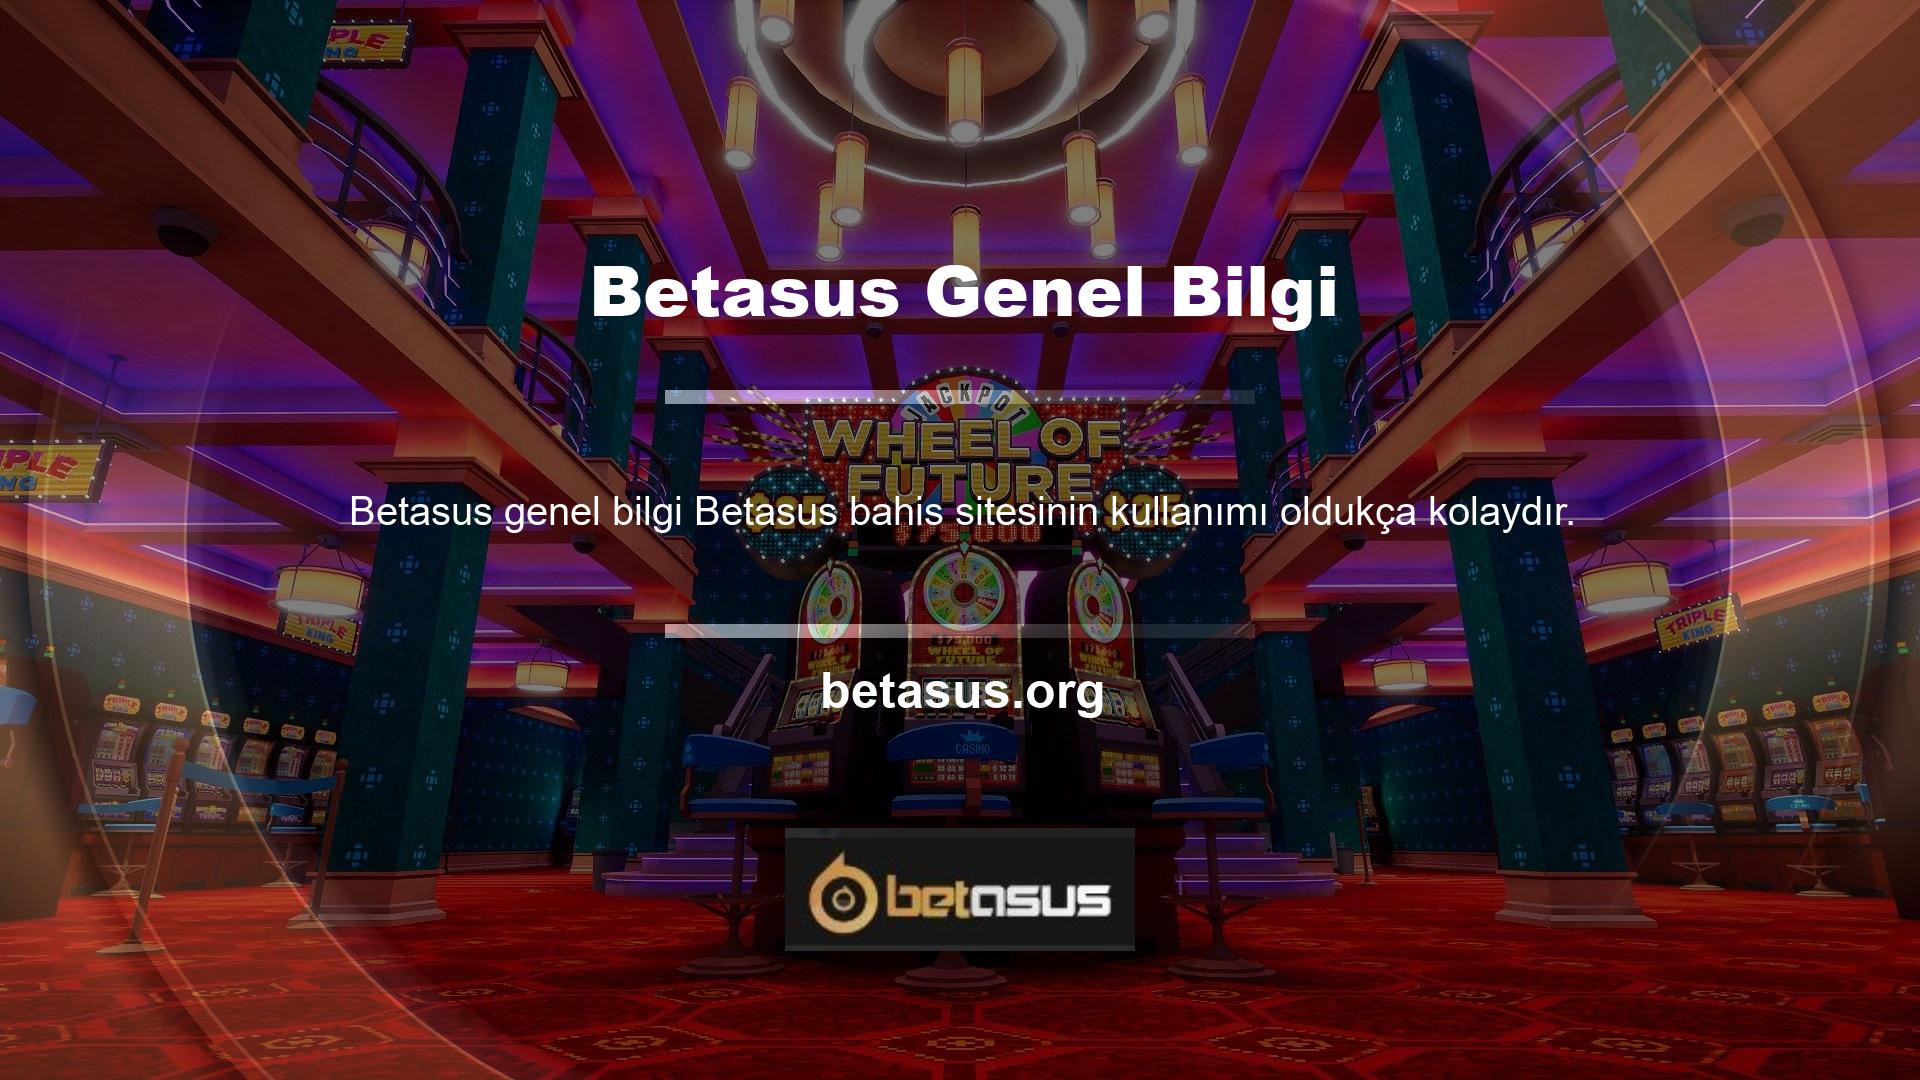 Web sitesinde birçok hizmeti aynı anda sunan Betasus sadece üye olarak yararlanabilirsiniz